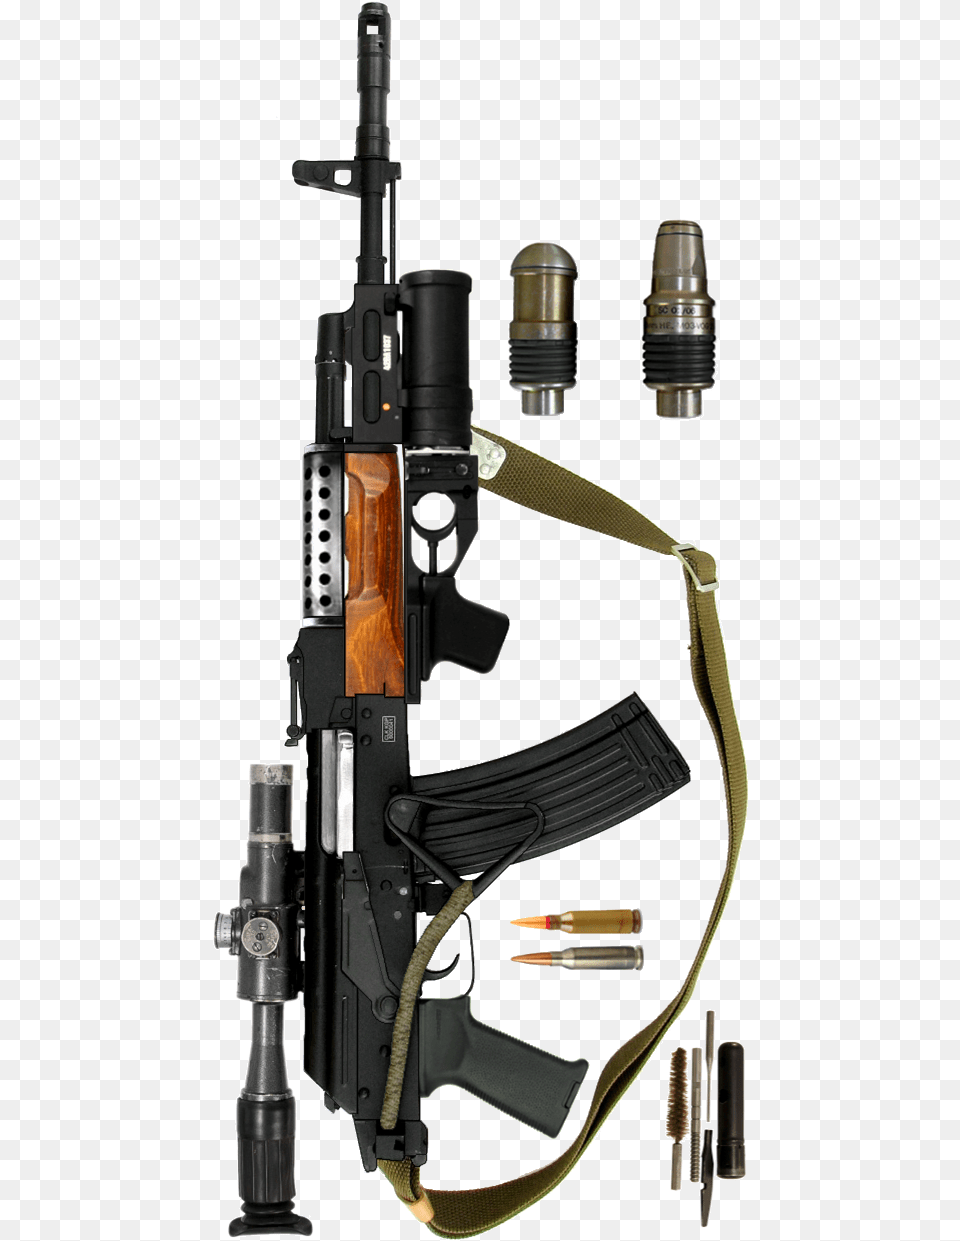 Gp 25 Grenade Launcher Cuba, Firearm, Gun, Rifle, Weapon Free Png Download